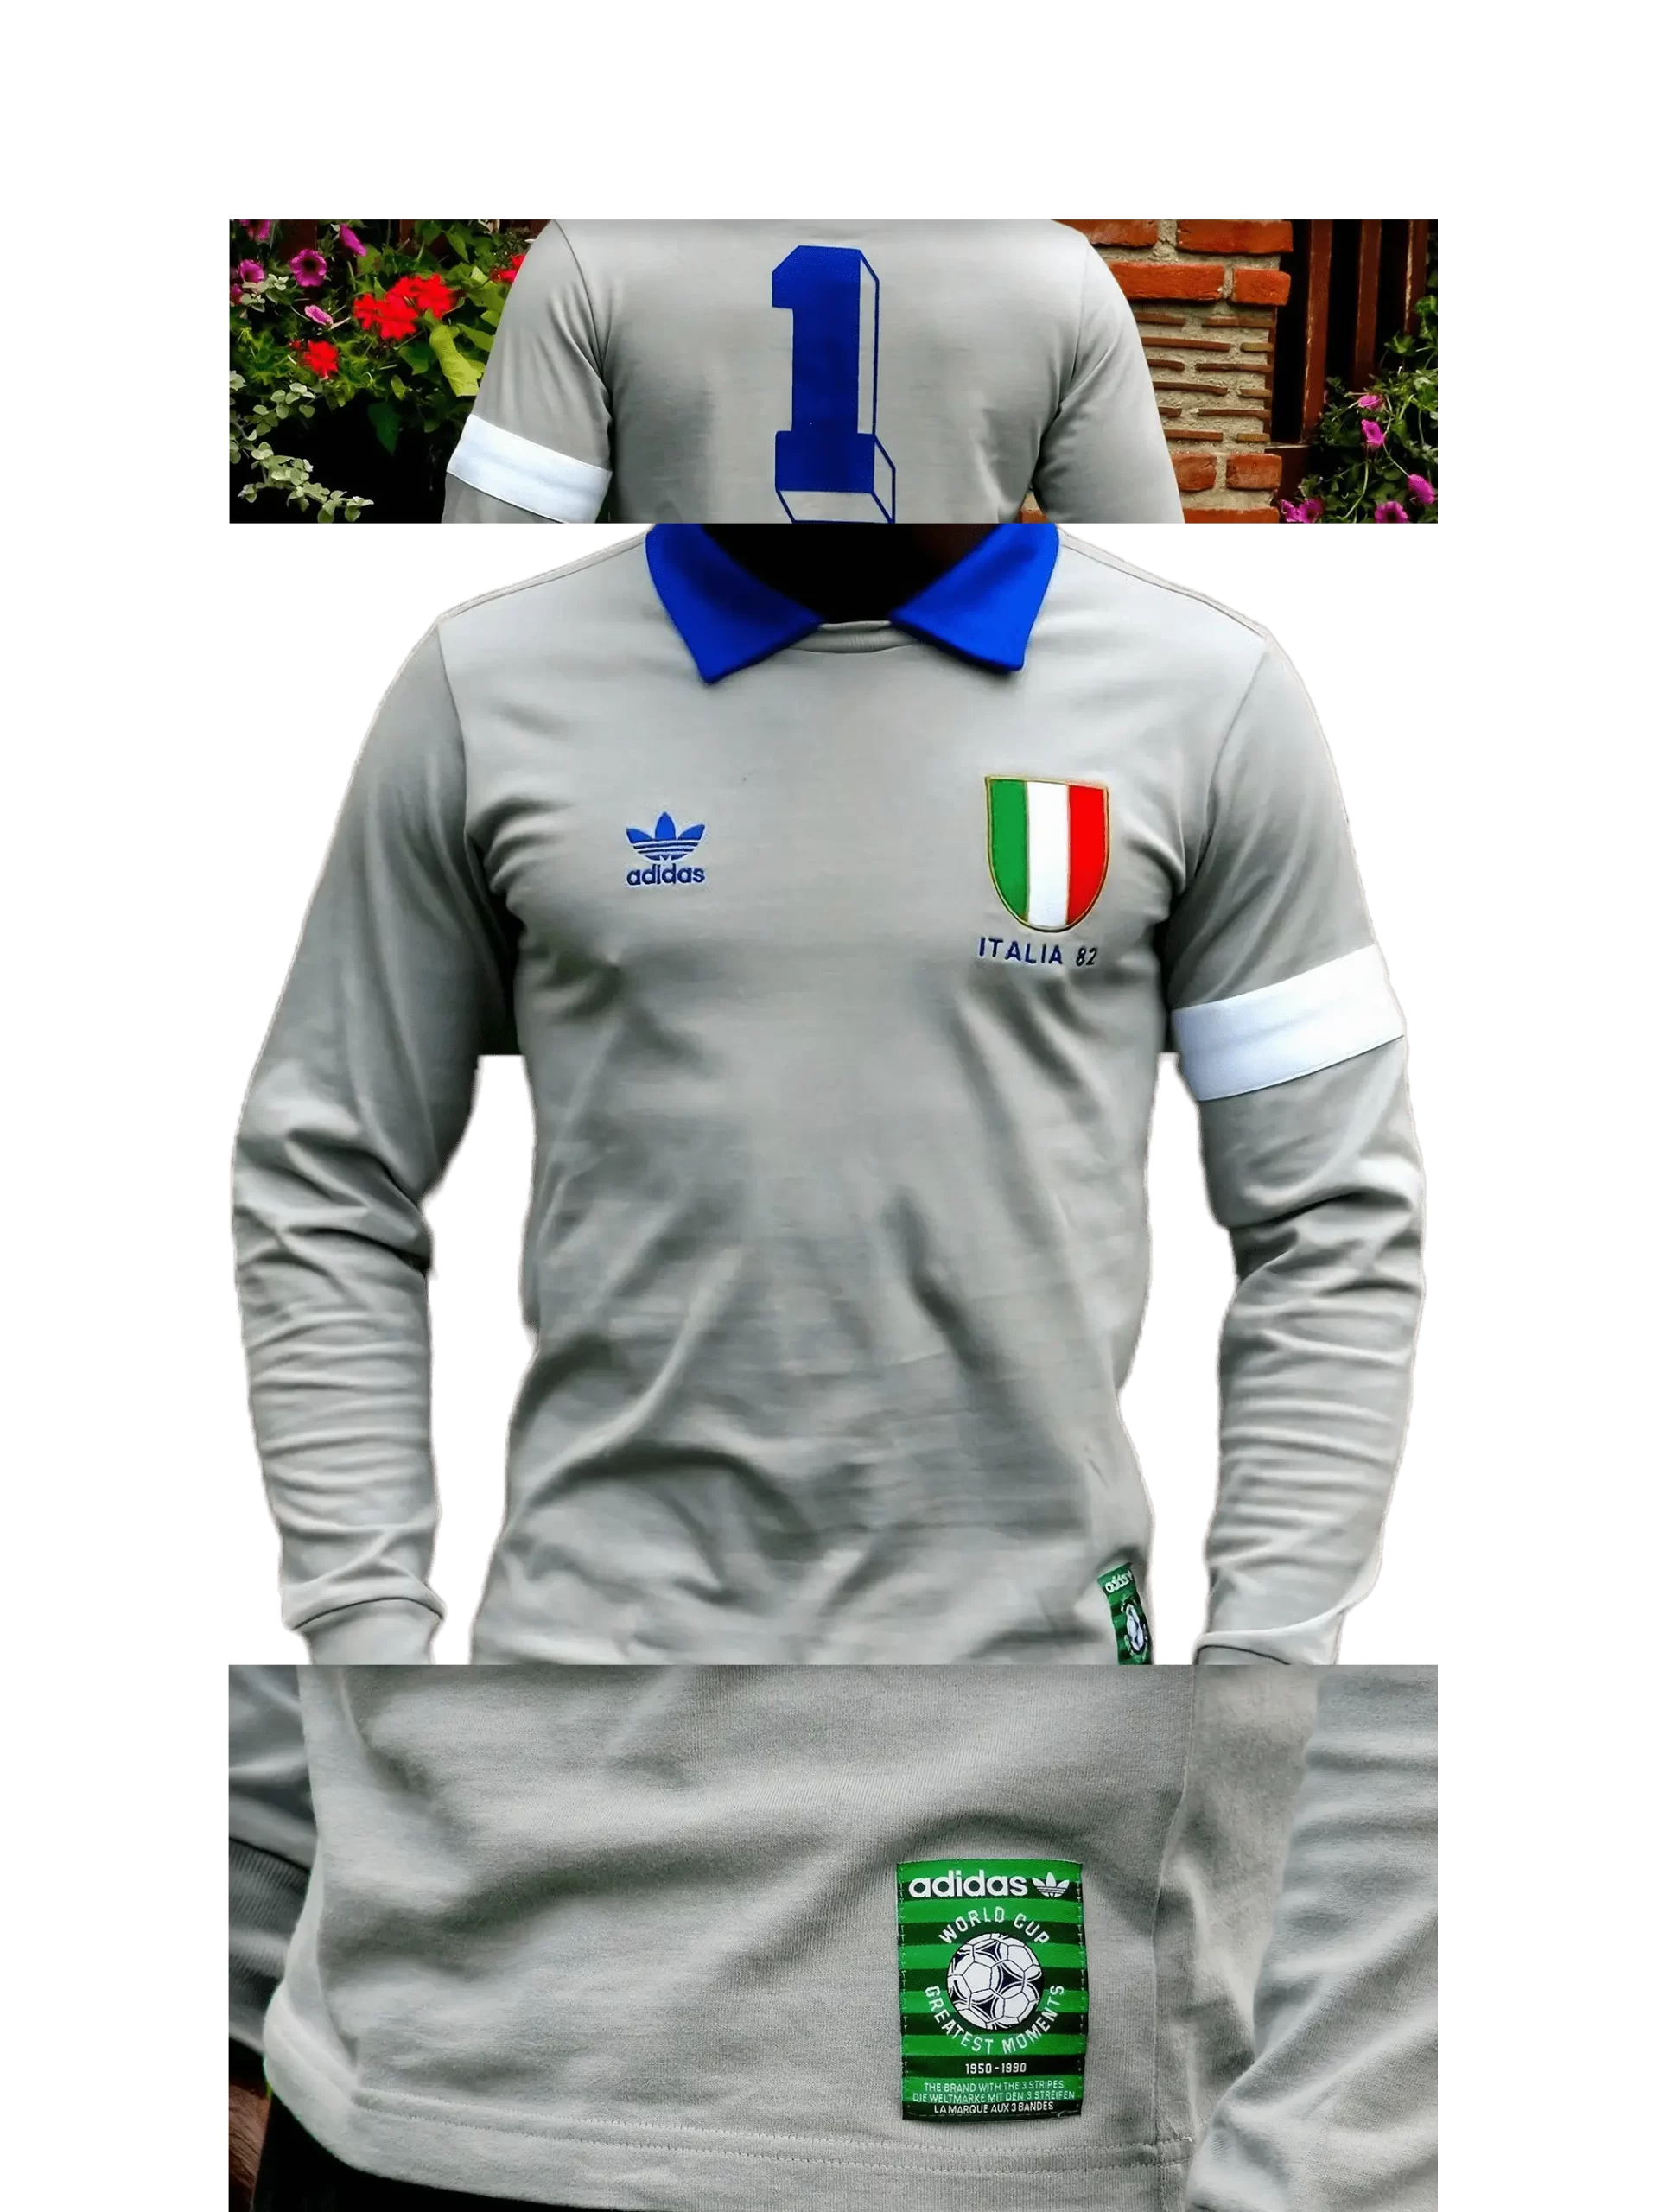 Men's 2006 Italia '82 Forza Azzurri LS by Adidas Originals: Joyous (EnLawded.com file #lmchk61684ip2y123326kg9st)